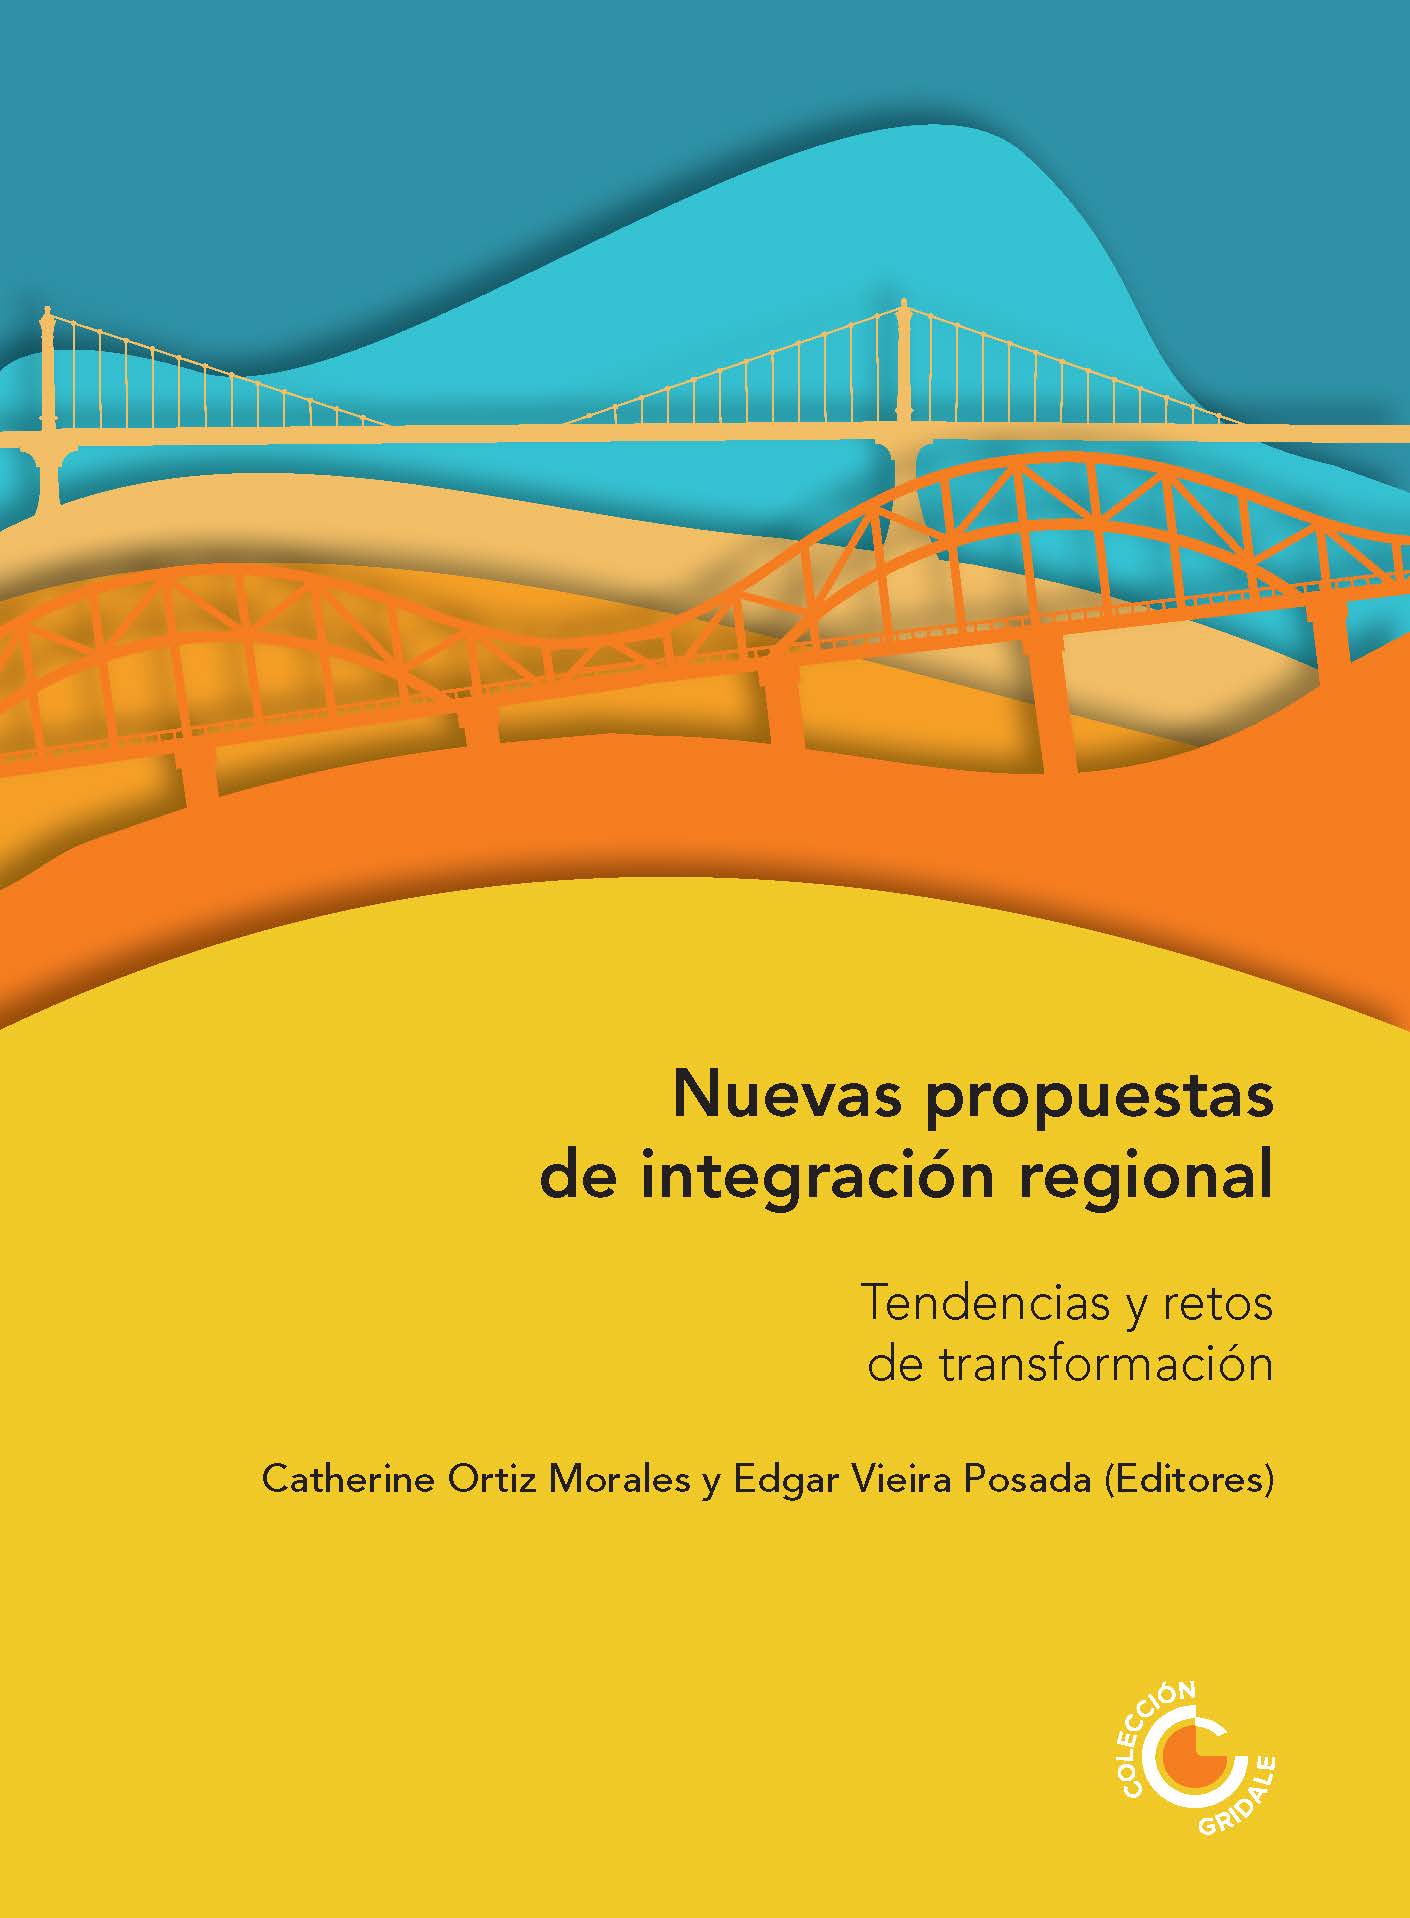 Imagen de portada del libro Nuevas propuestas de integración regional